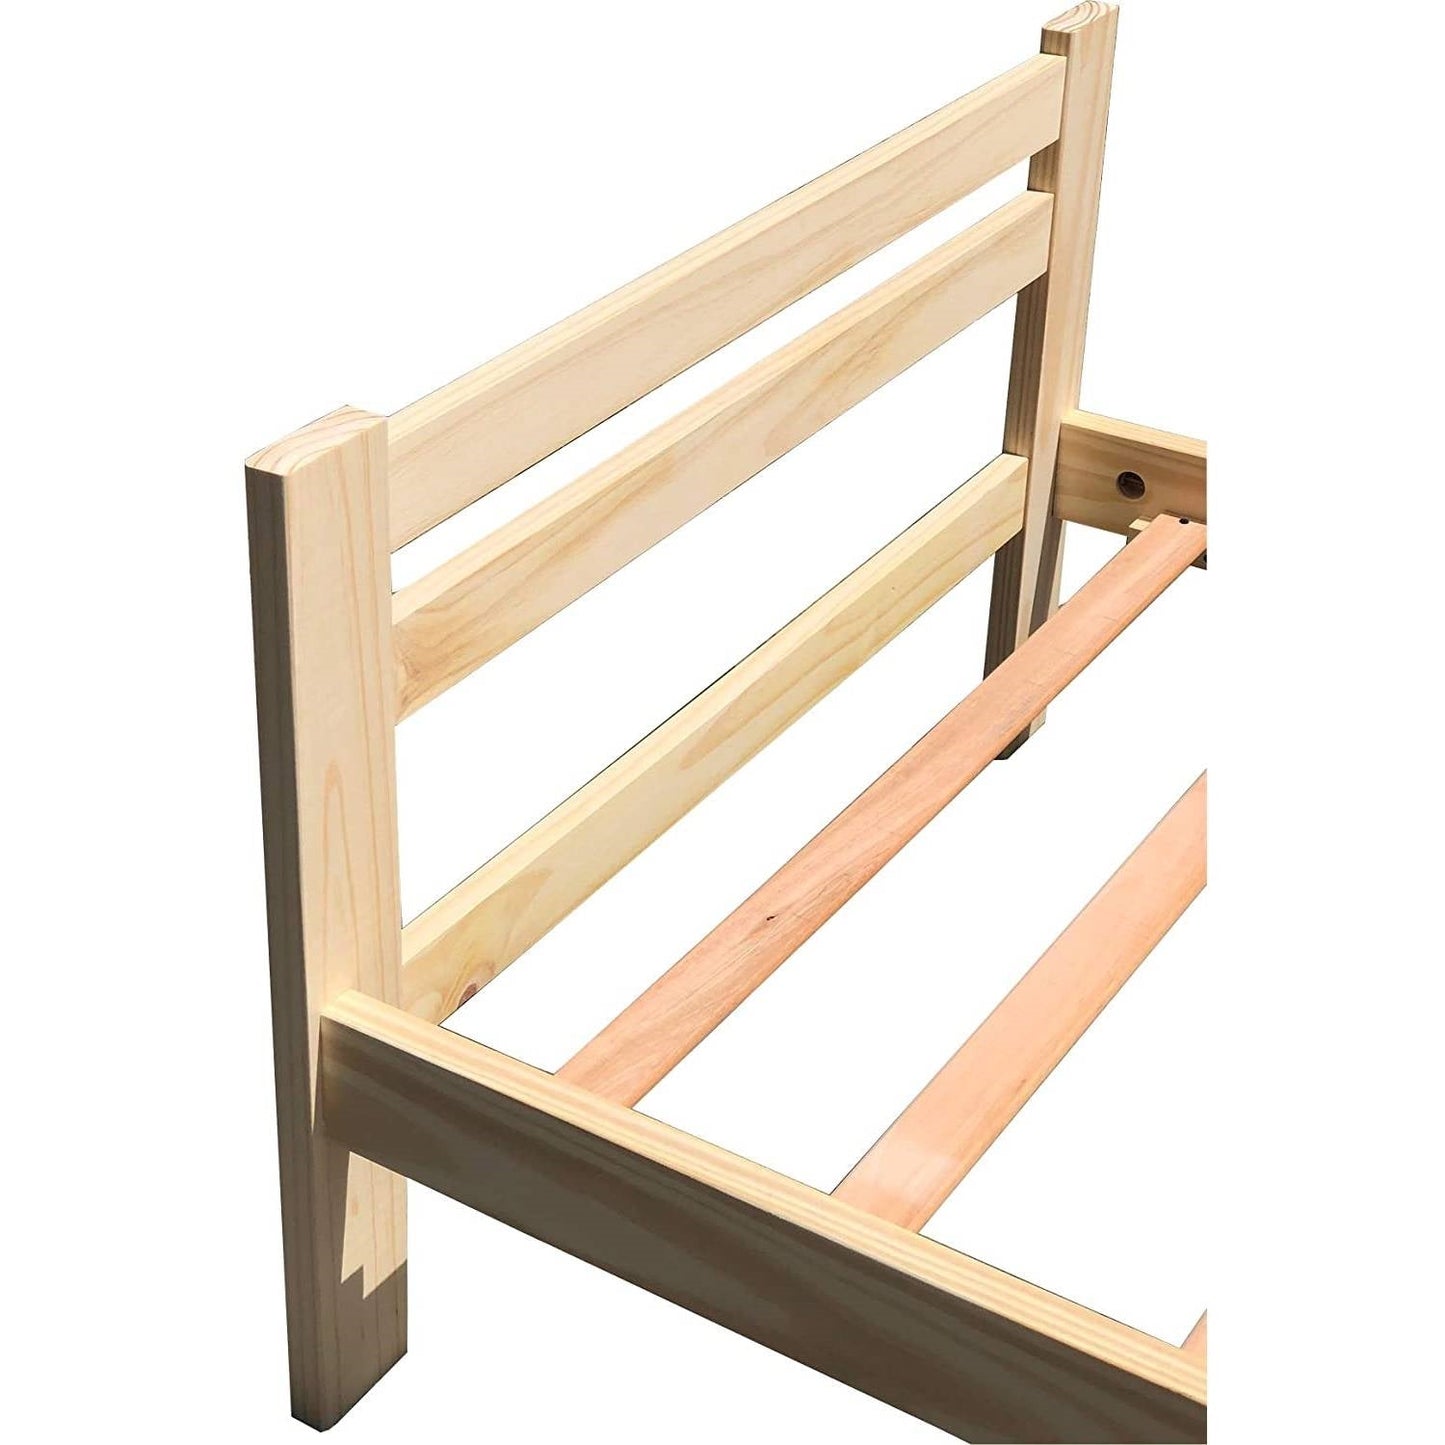 Bedroom > Bed Frames > Platform Beds - Twin Size Unfinished Solid Pine Wood Platform Bed Frame With Slatted Headboard